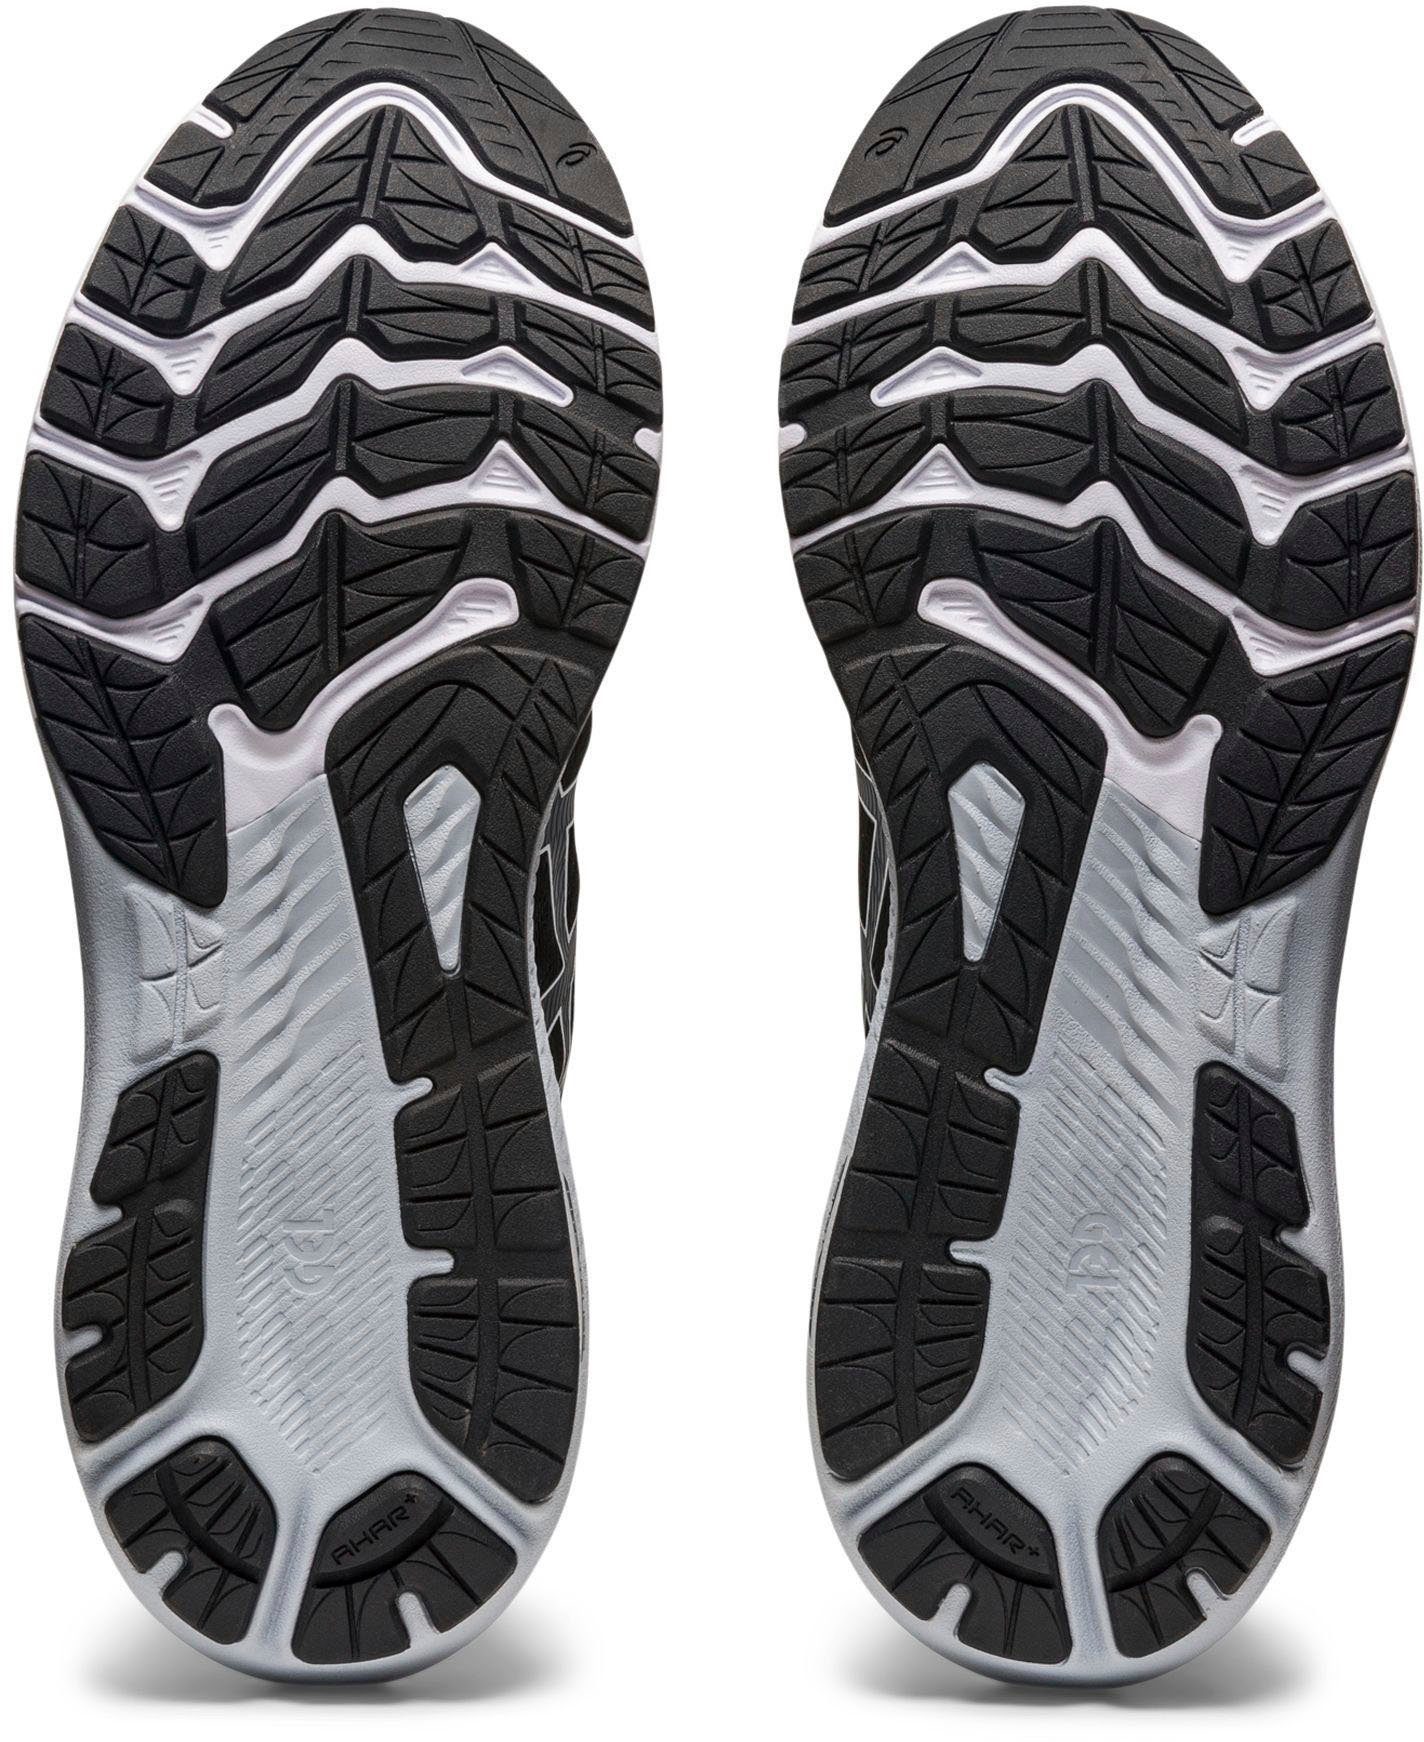 Asics GT-2000 11 schwarz-weiß Laufschuh